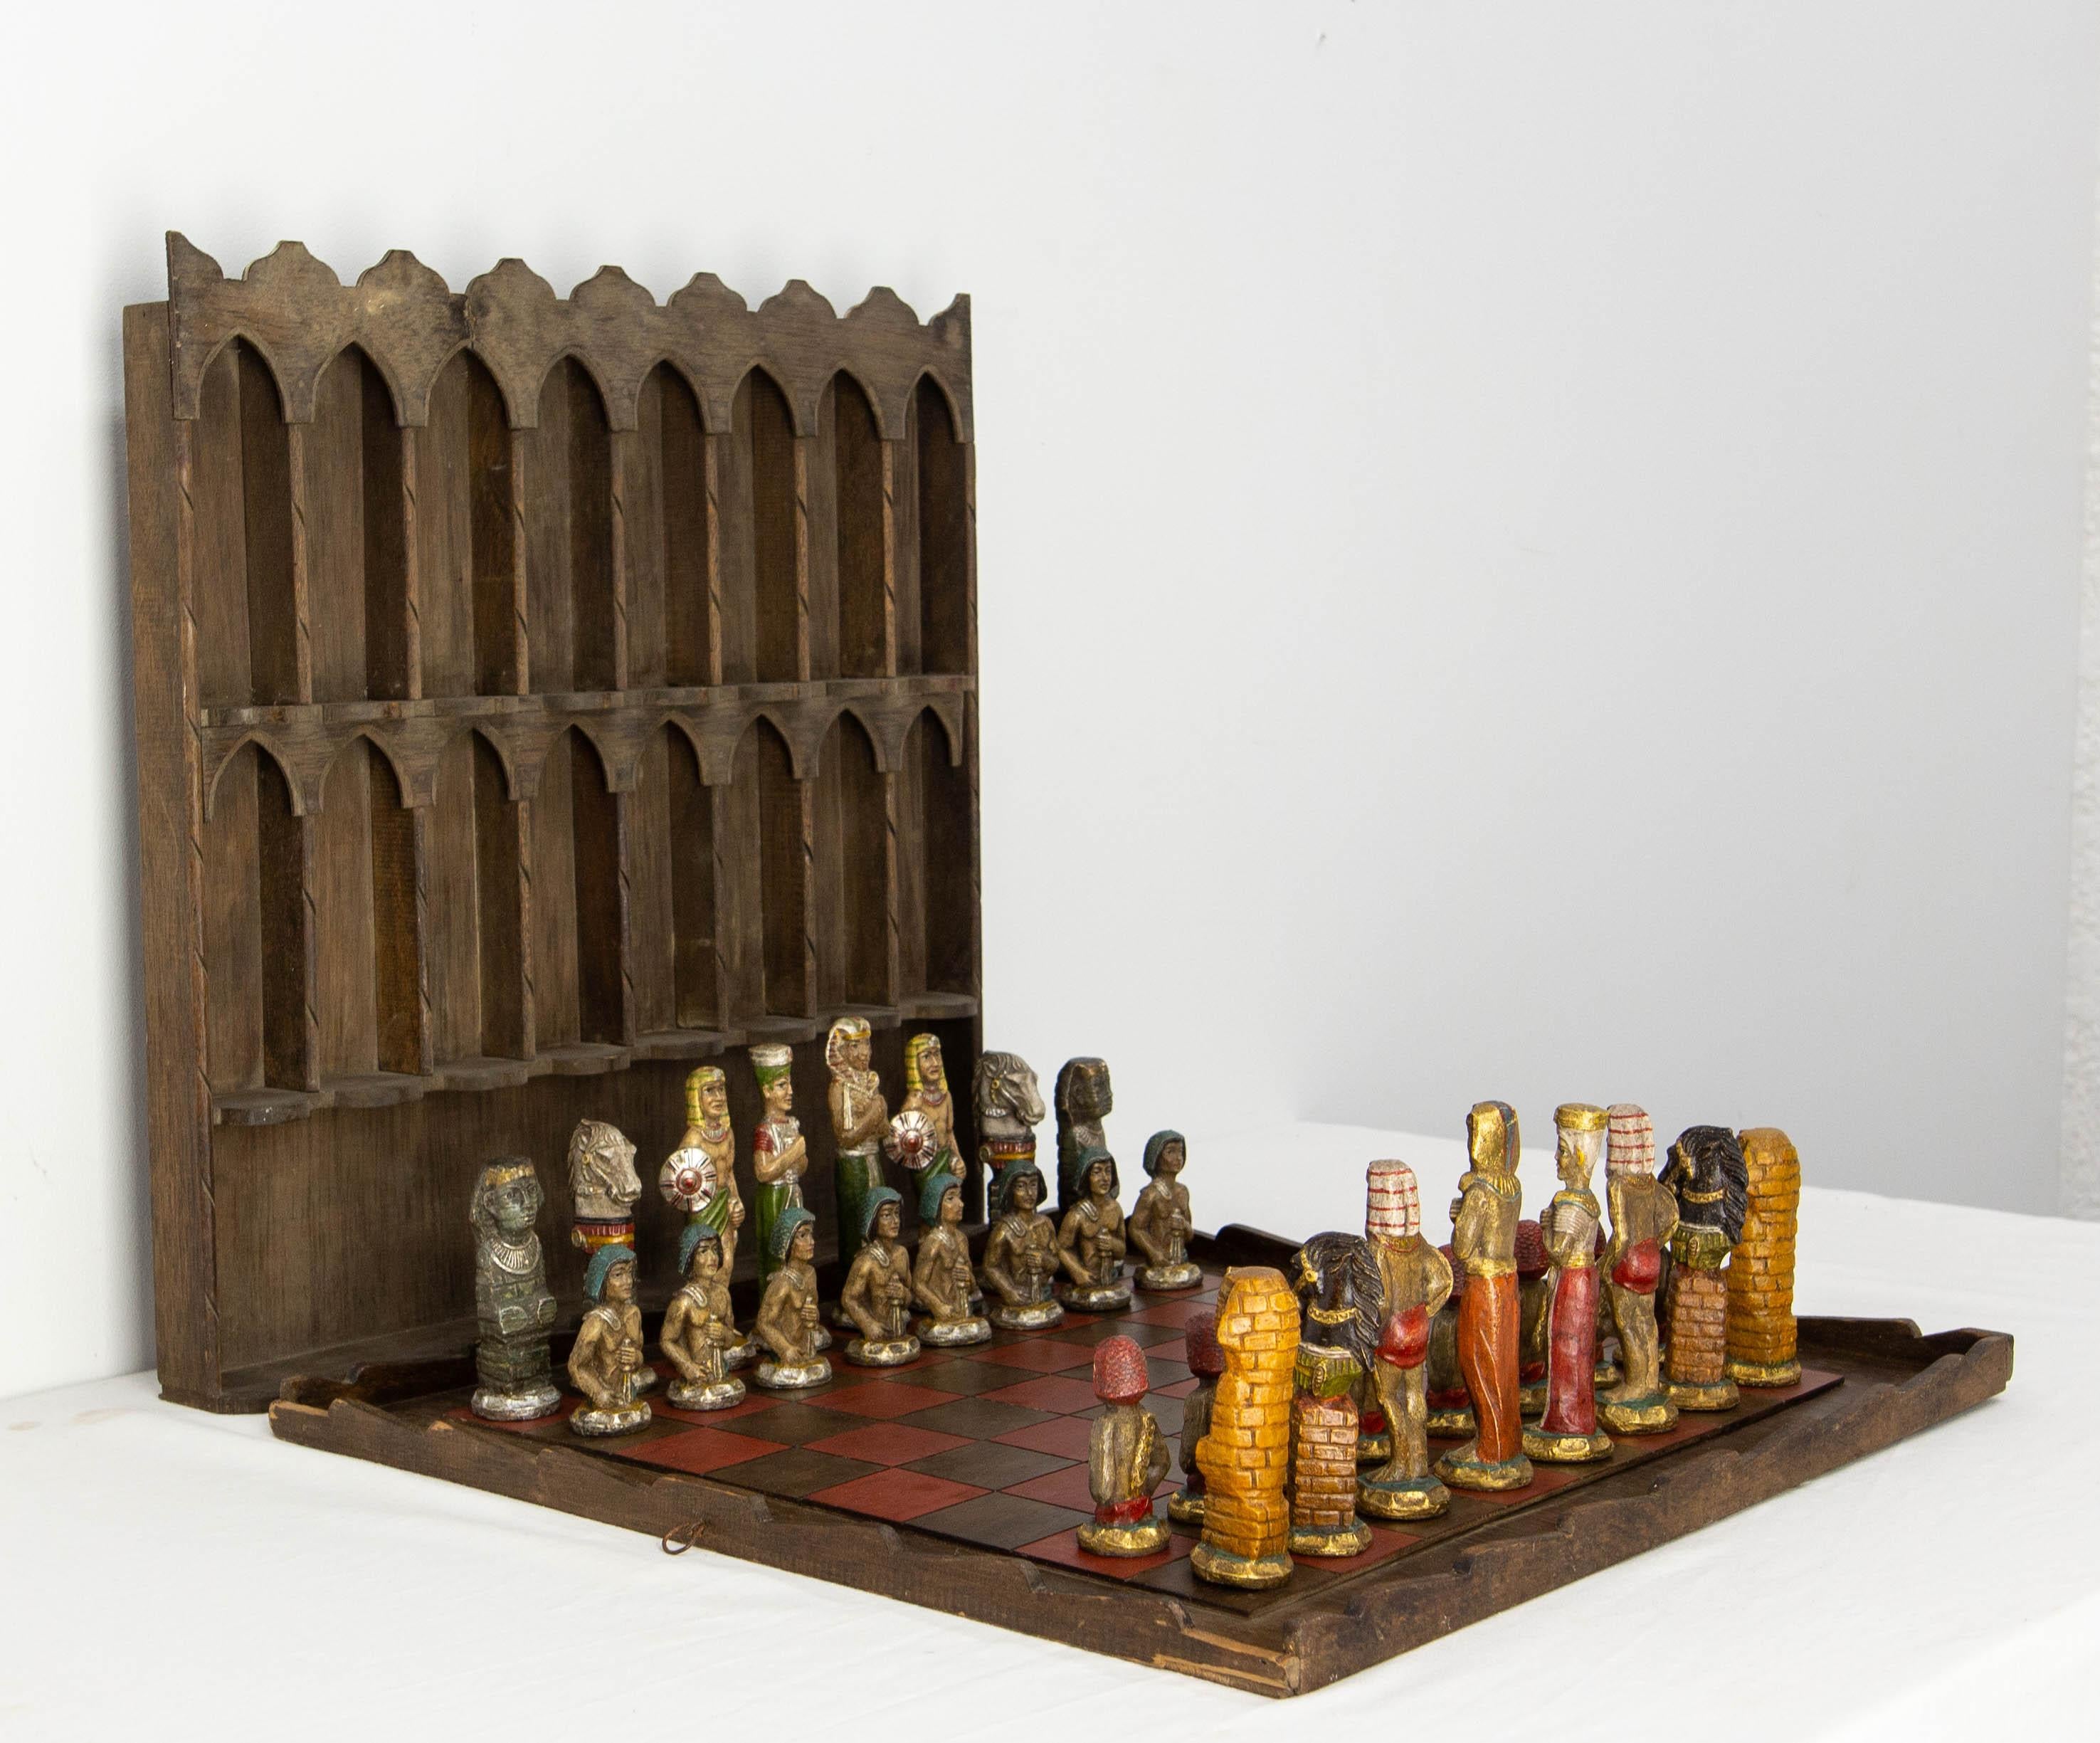 Jeu d'échecs français sur le thème de l'Égypte ancienne. Les pièces d'échecs sont en plâtre peint et ciré, l'échiquier est en bois et il y a aussi une étagère. Chaque pièce est caractéristique et l'ensemble est étonnant.
Toutes les pièces sont